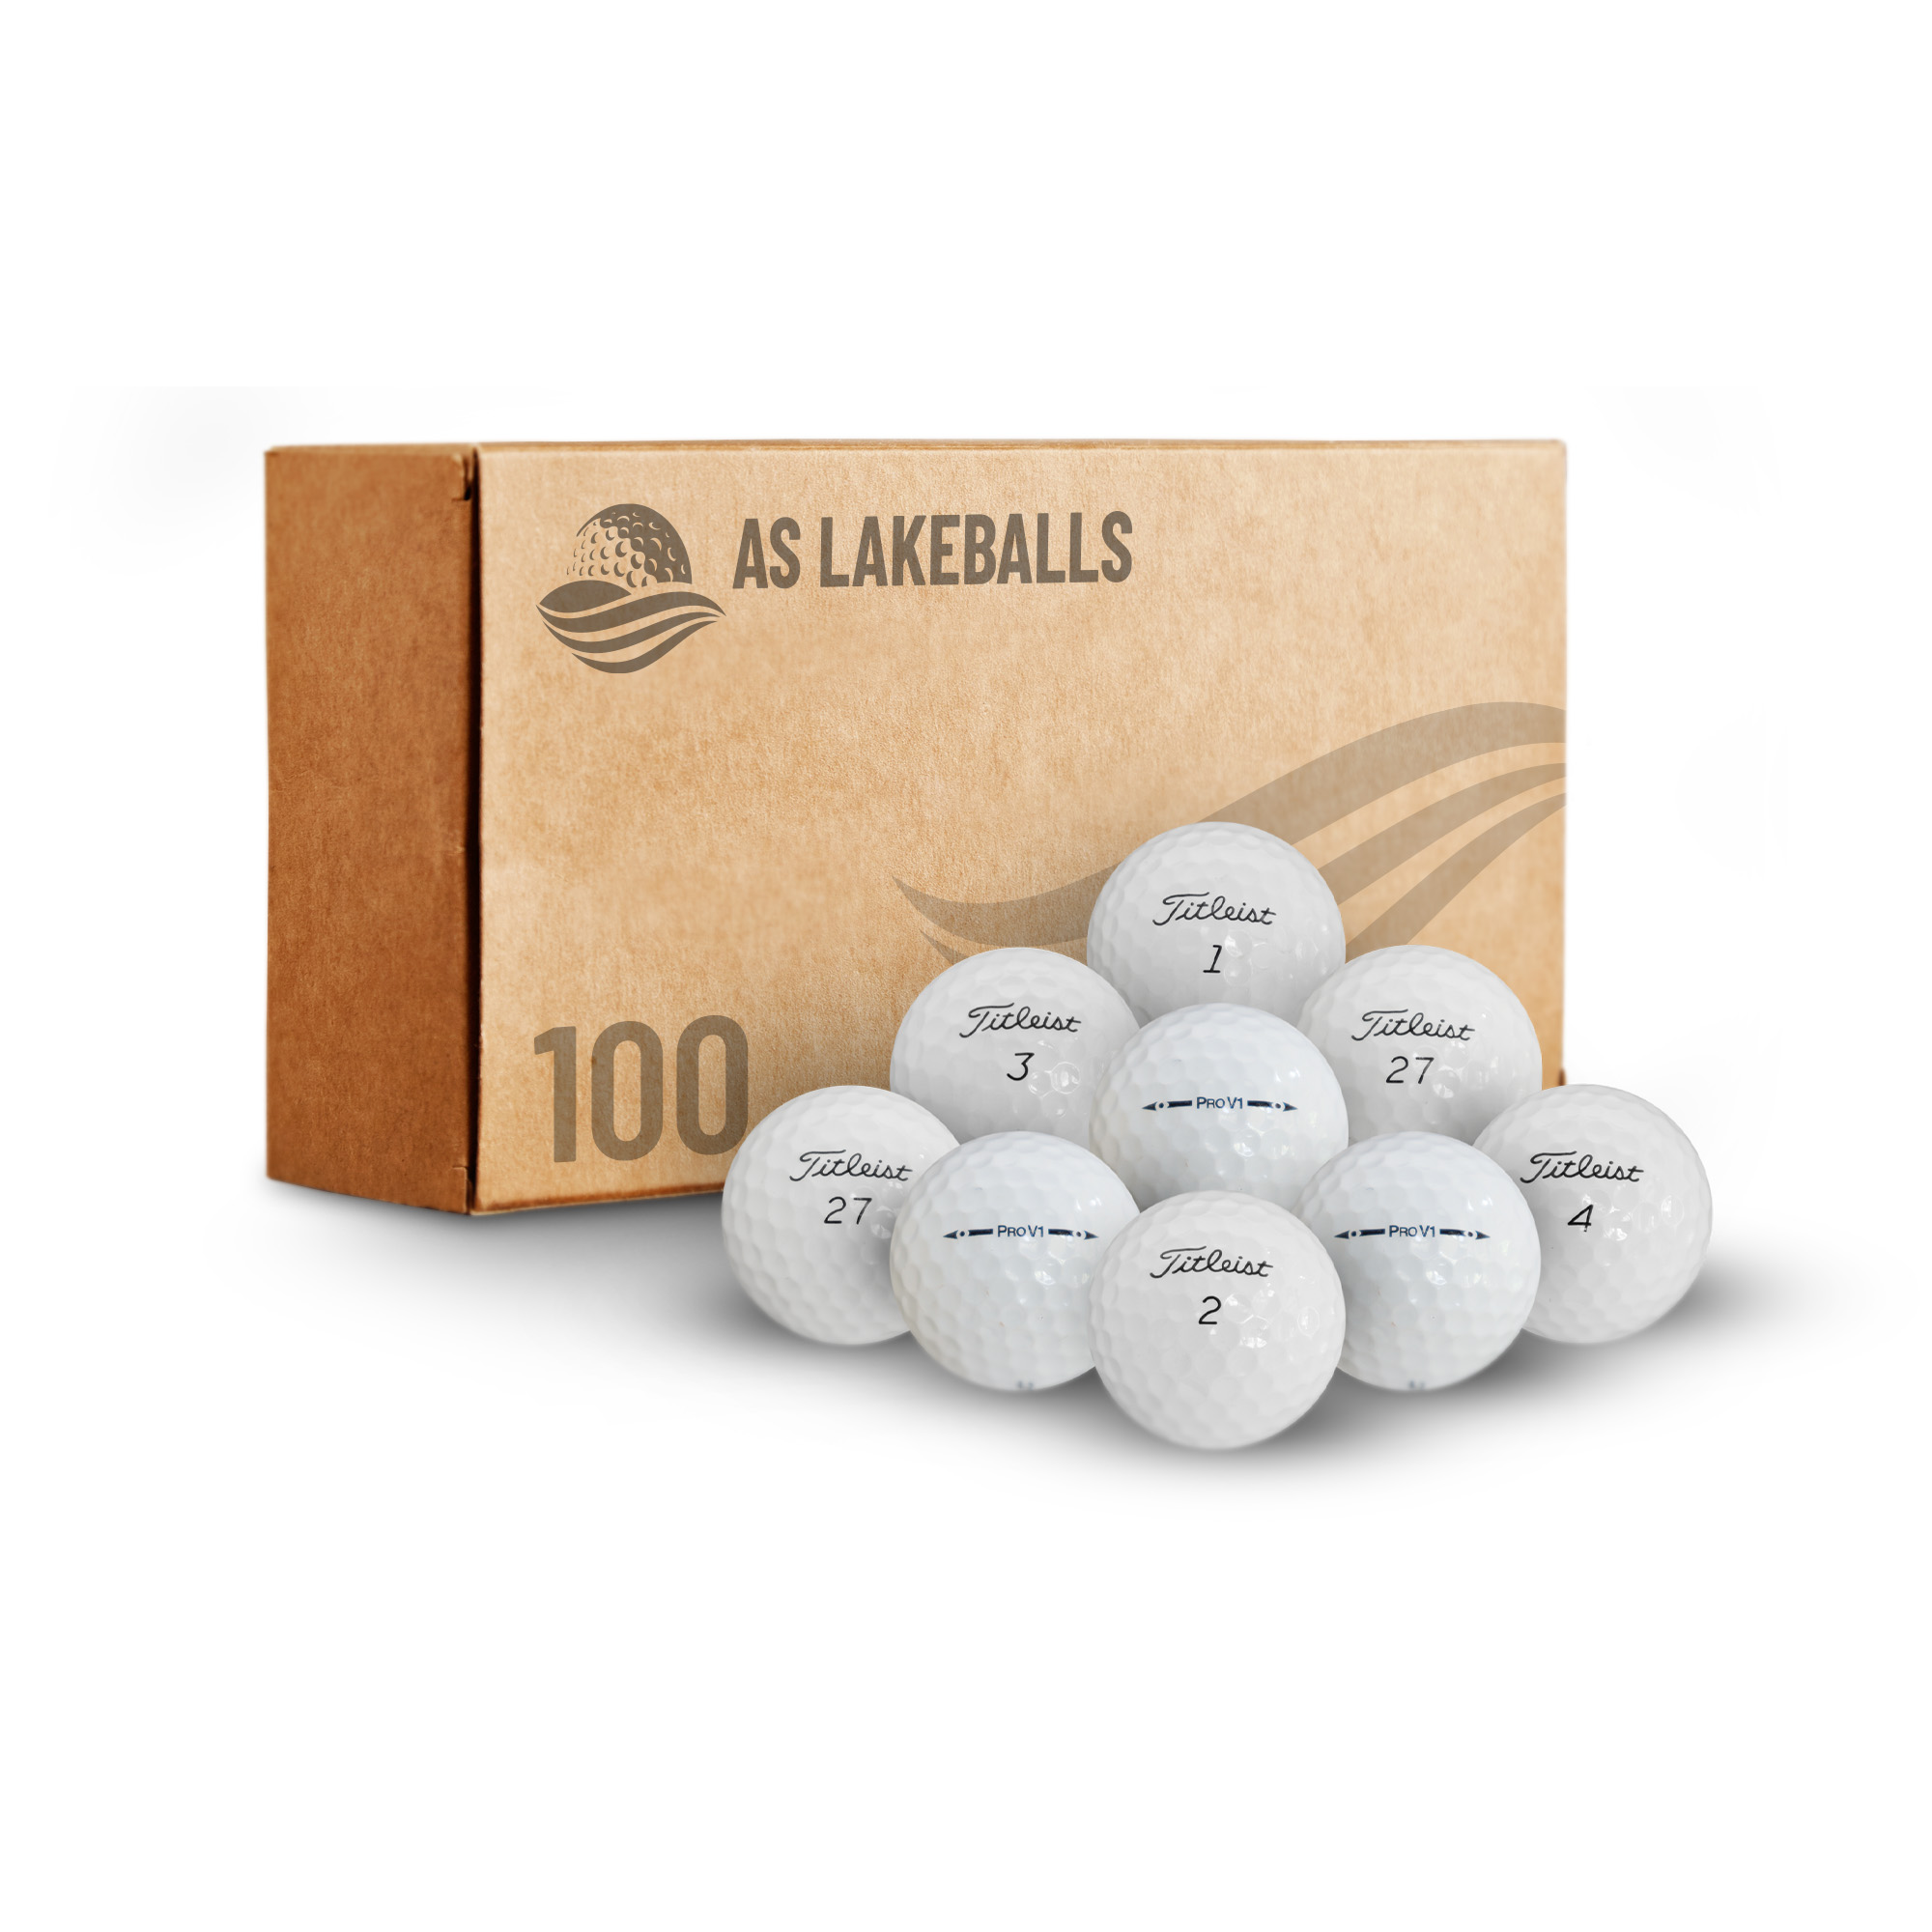 100 Stück Titleist Pro V1 AA Lakeballs bei AS Lakeballs günstig kaufen